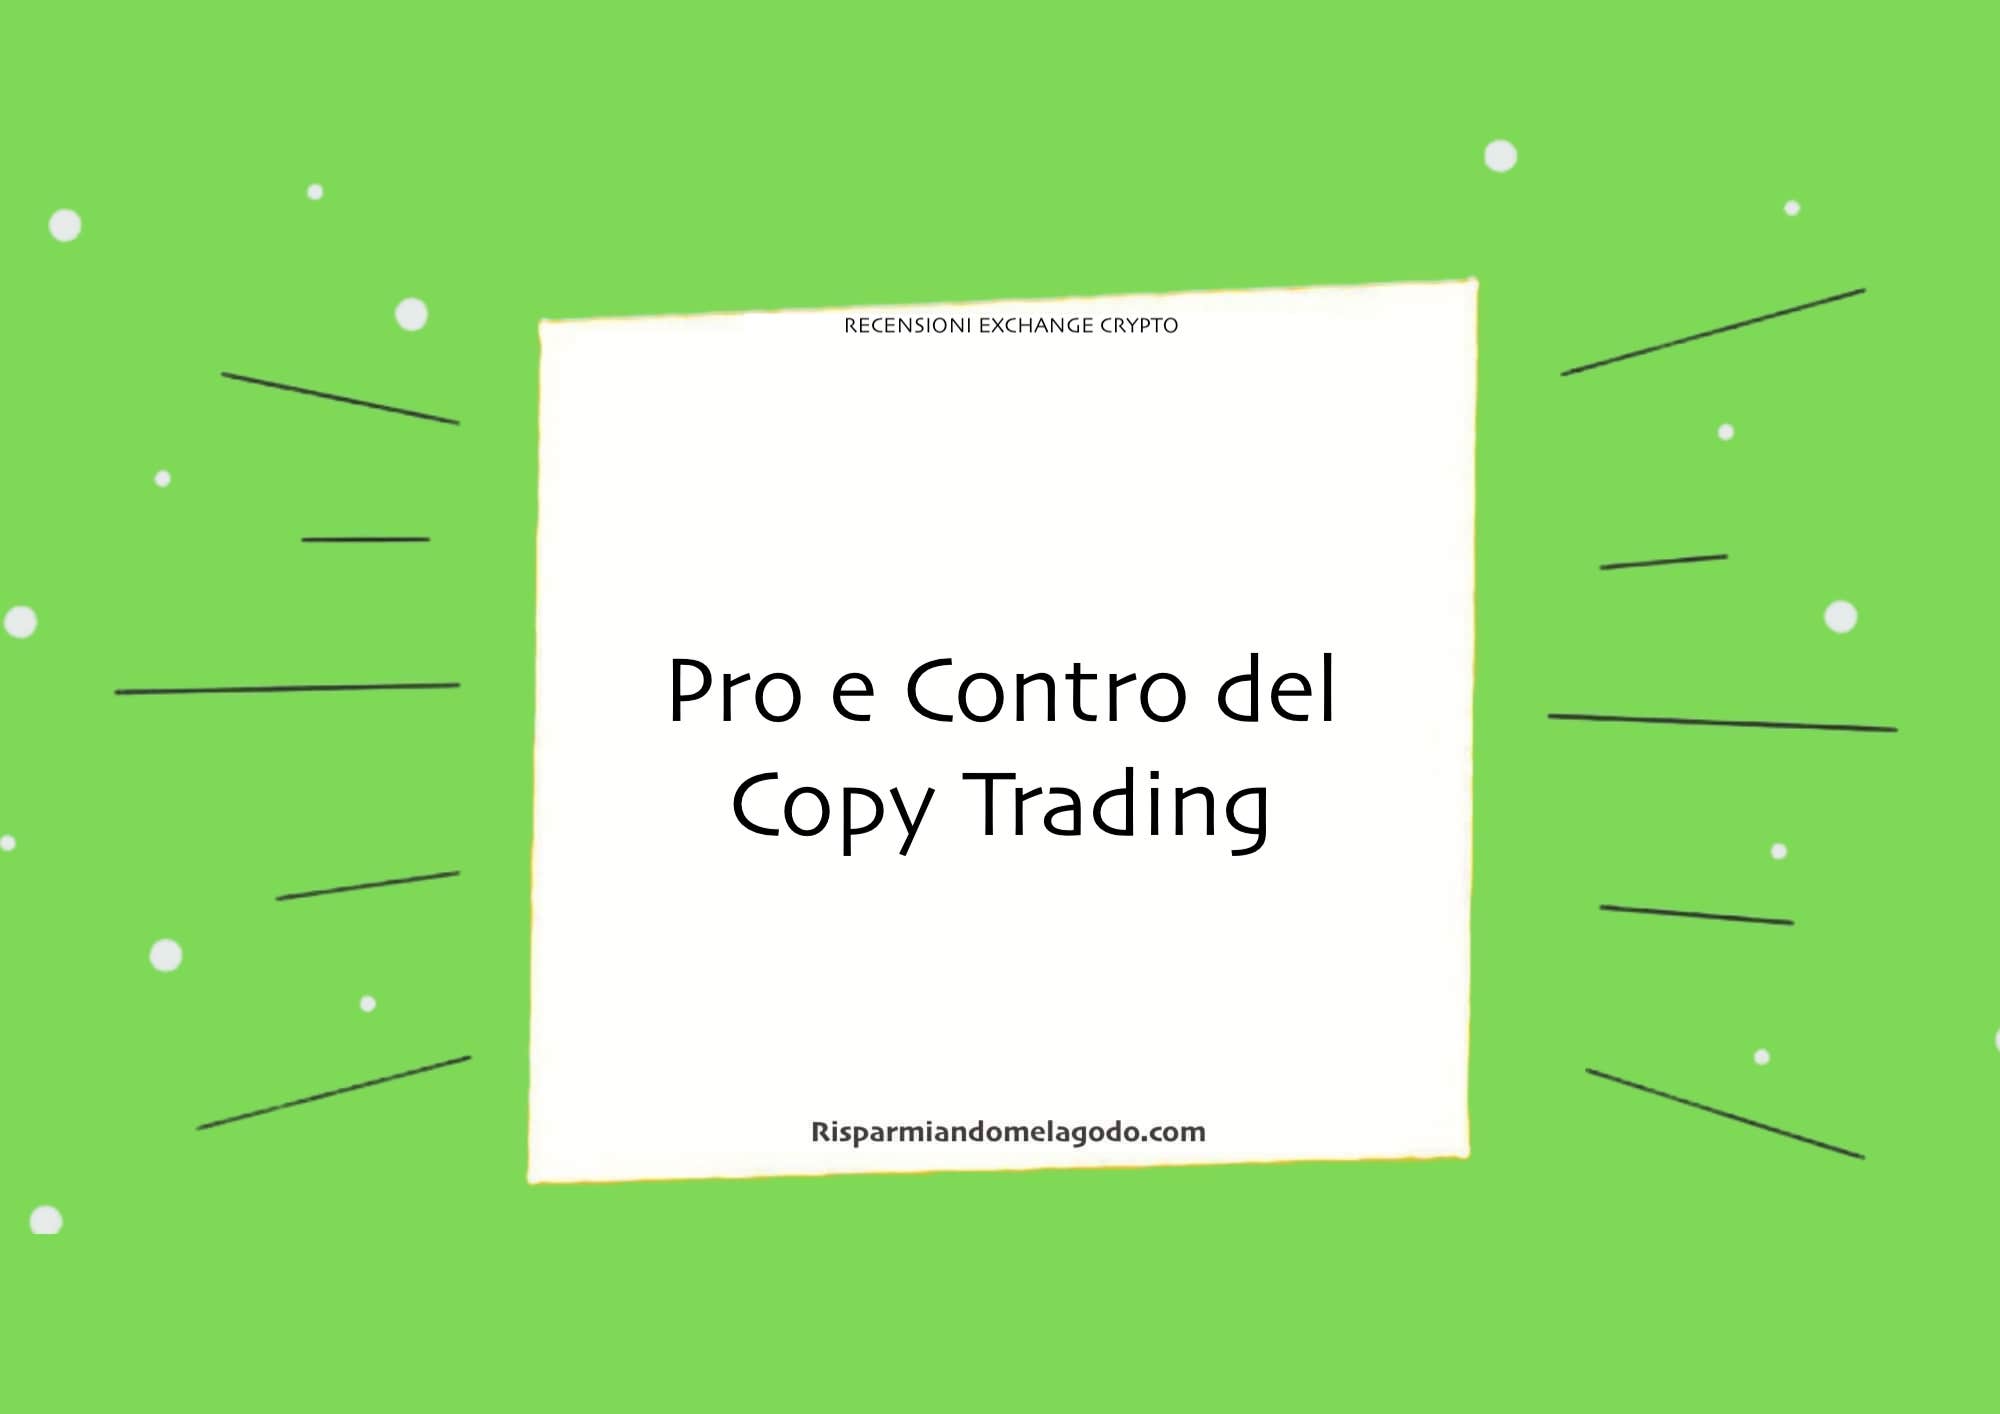 Pro e Contro del Copy Trading